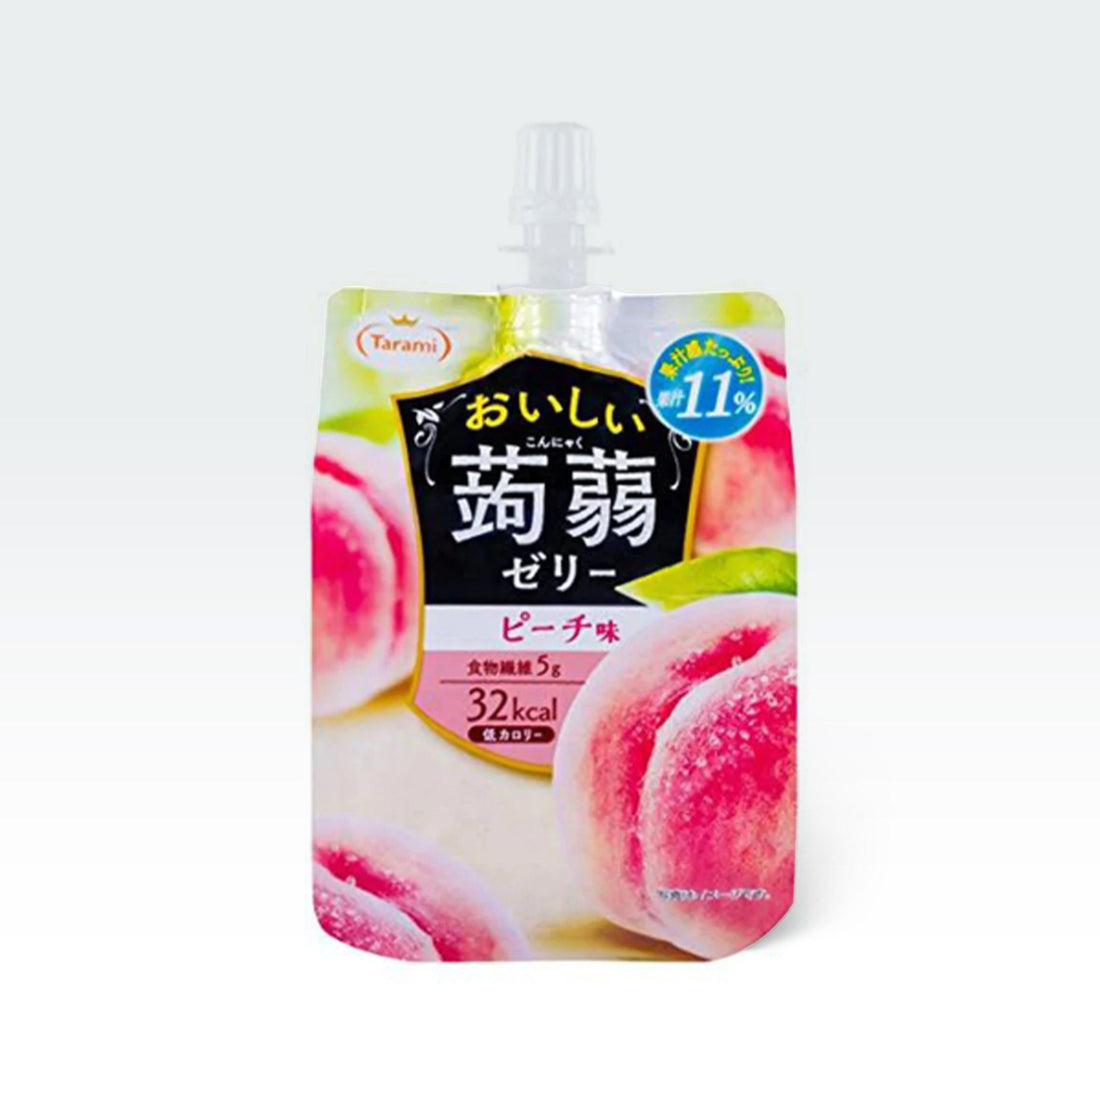 Tarami Oishii Konjac Jelly Peach 5.29oz(150g) - Anytime Basket